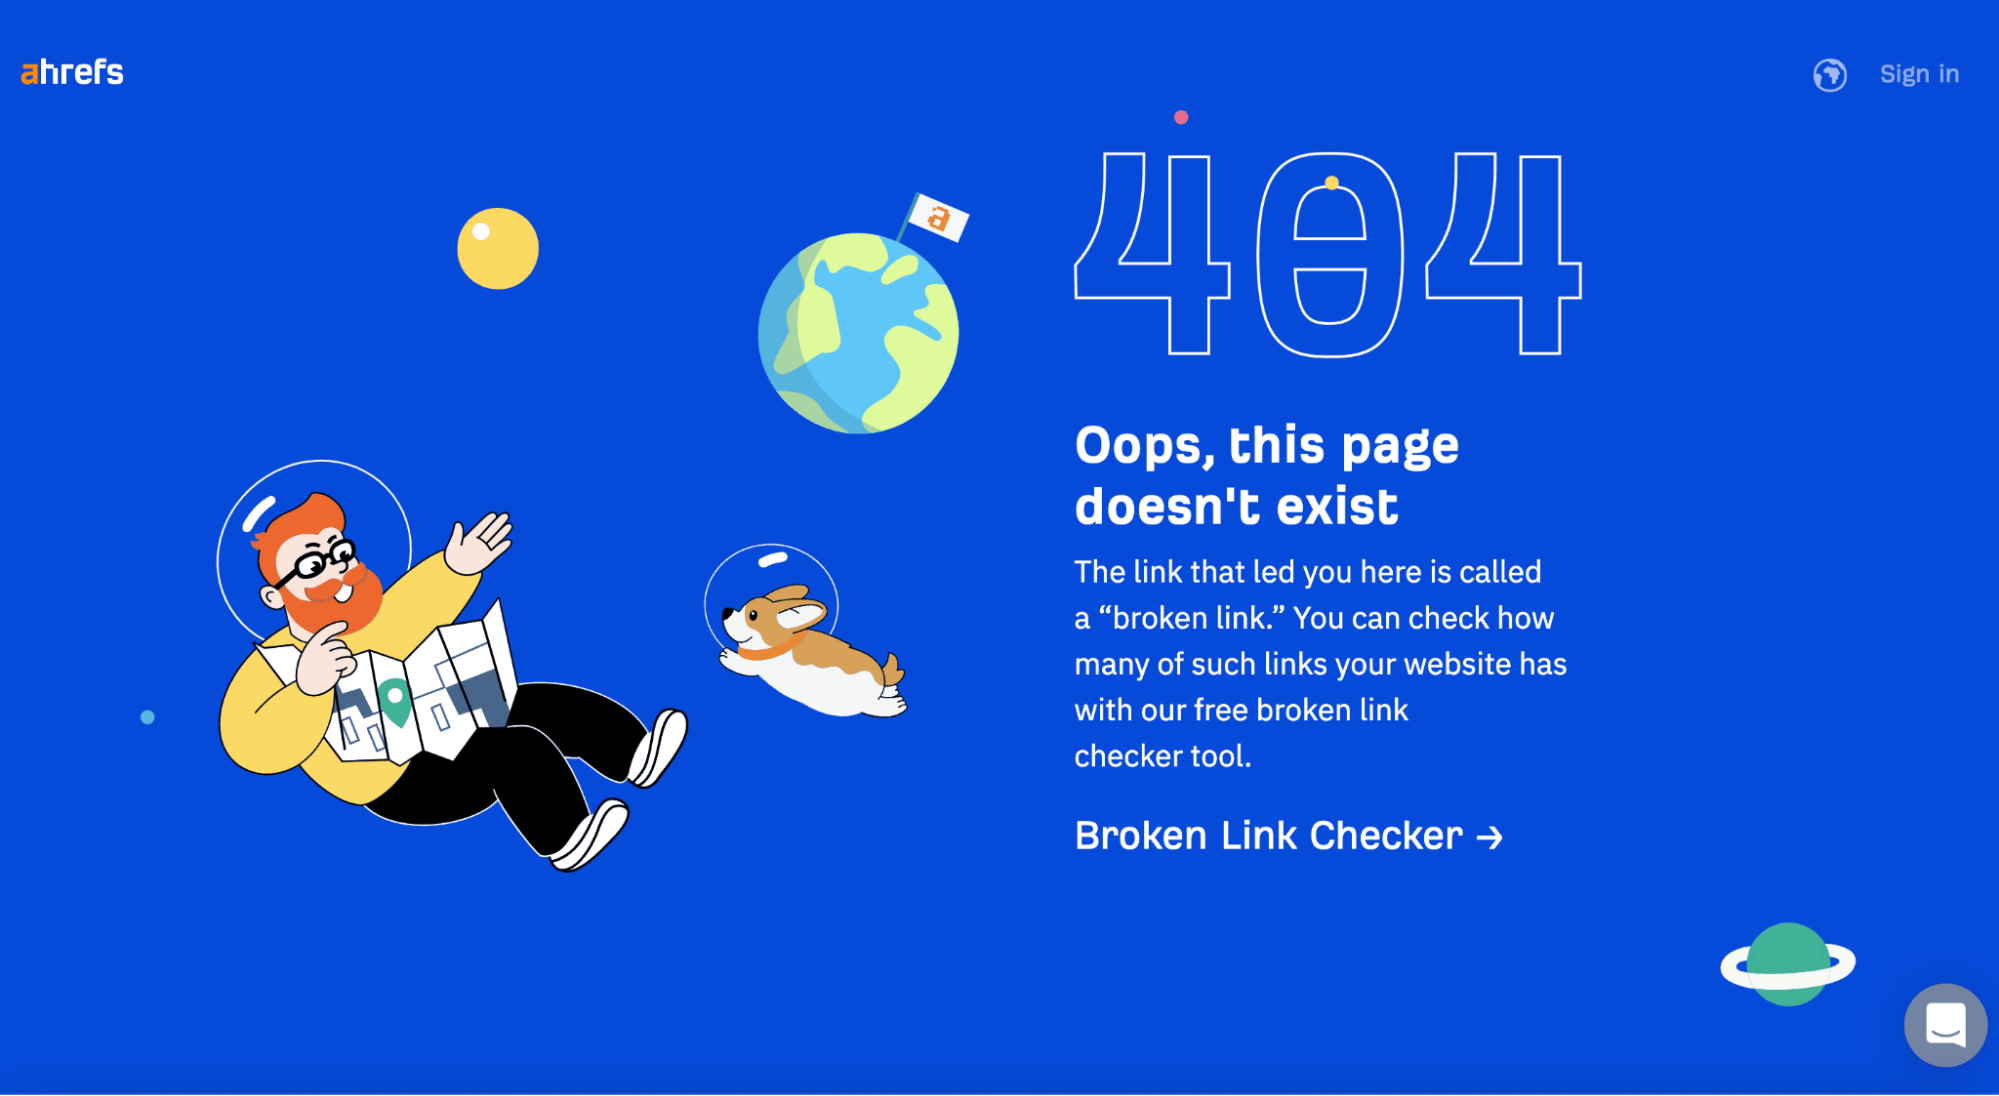 Ahrefs 404 page, via ahrefs.com
